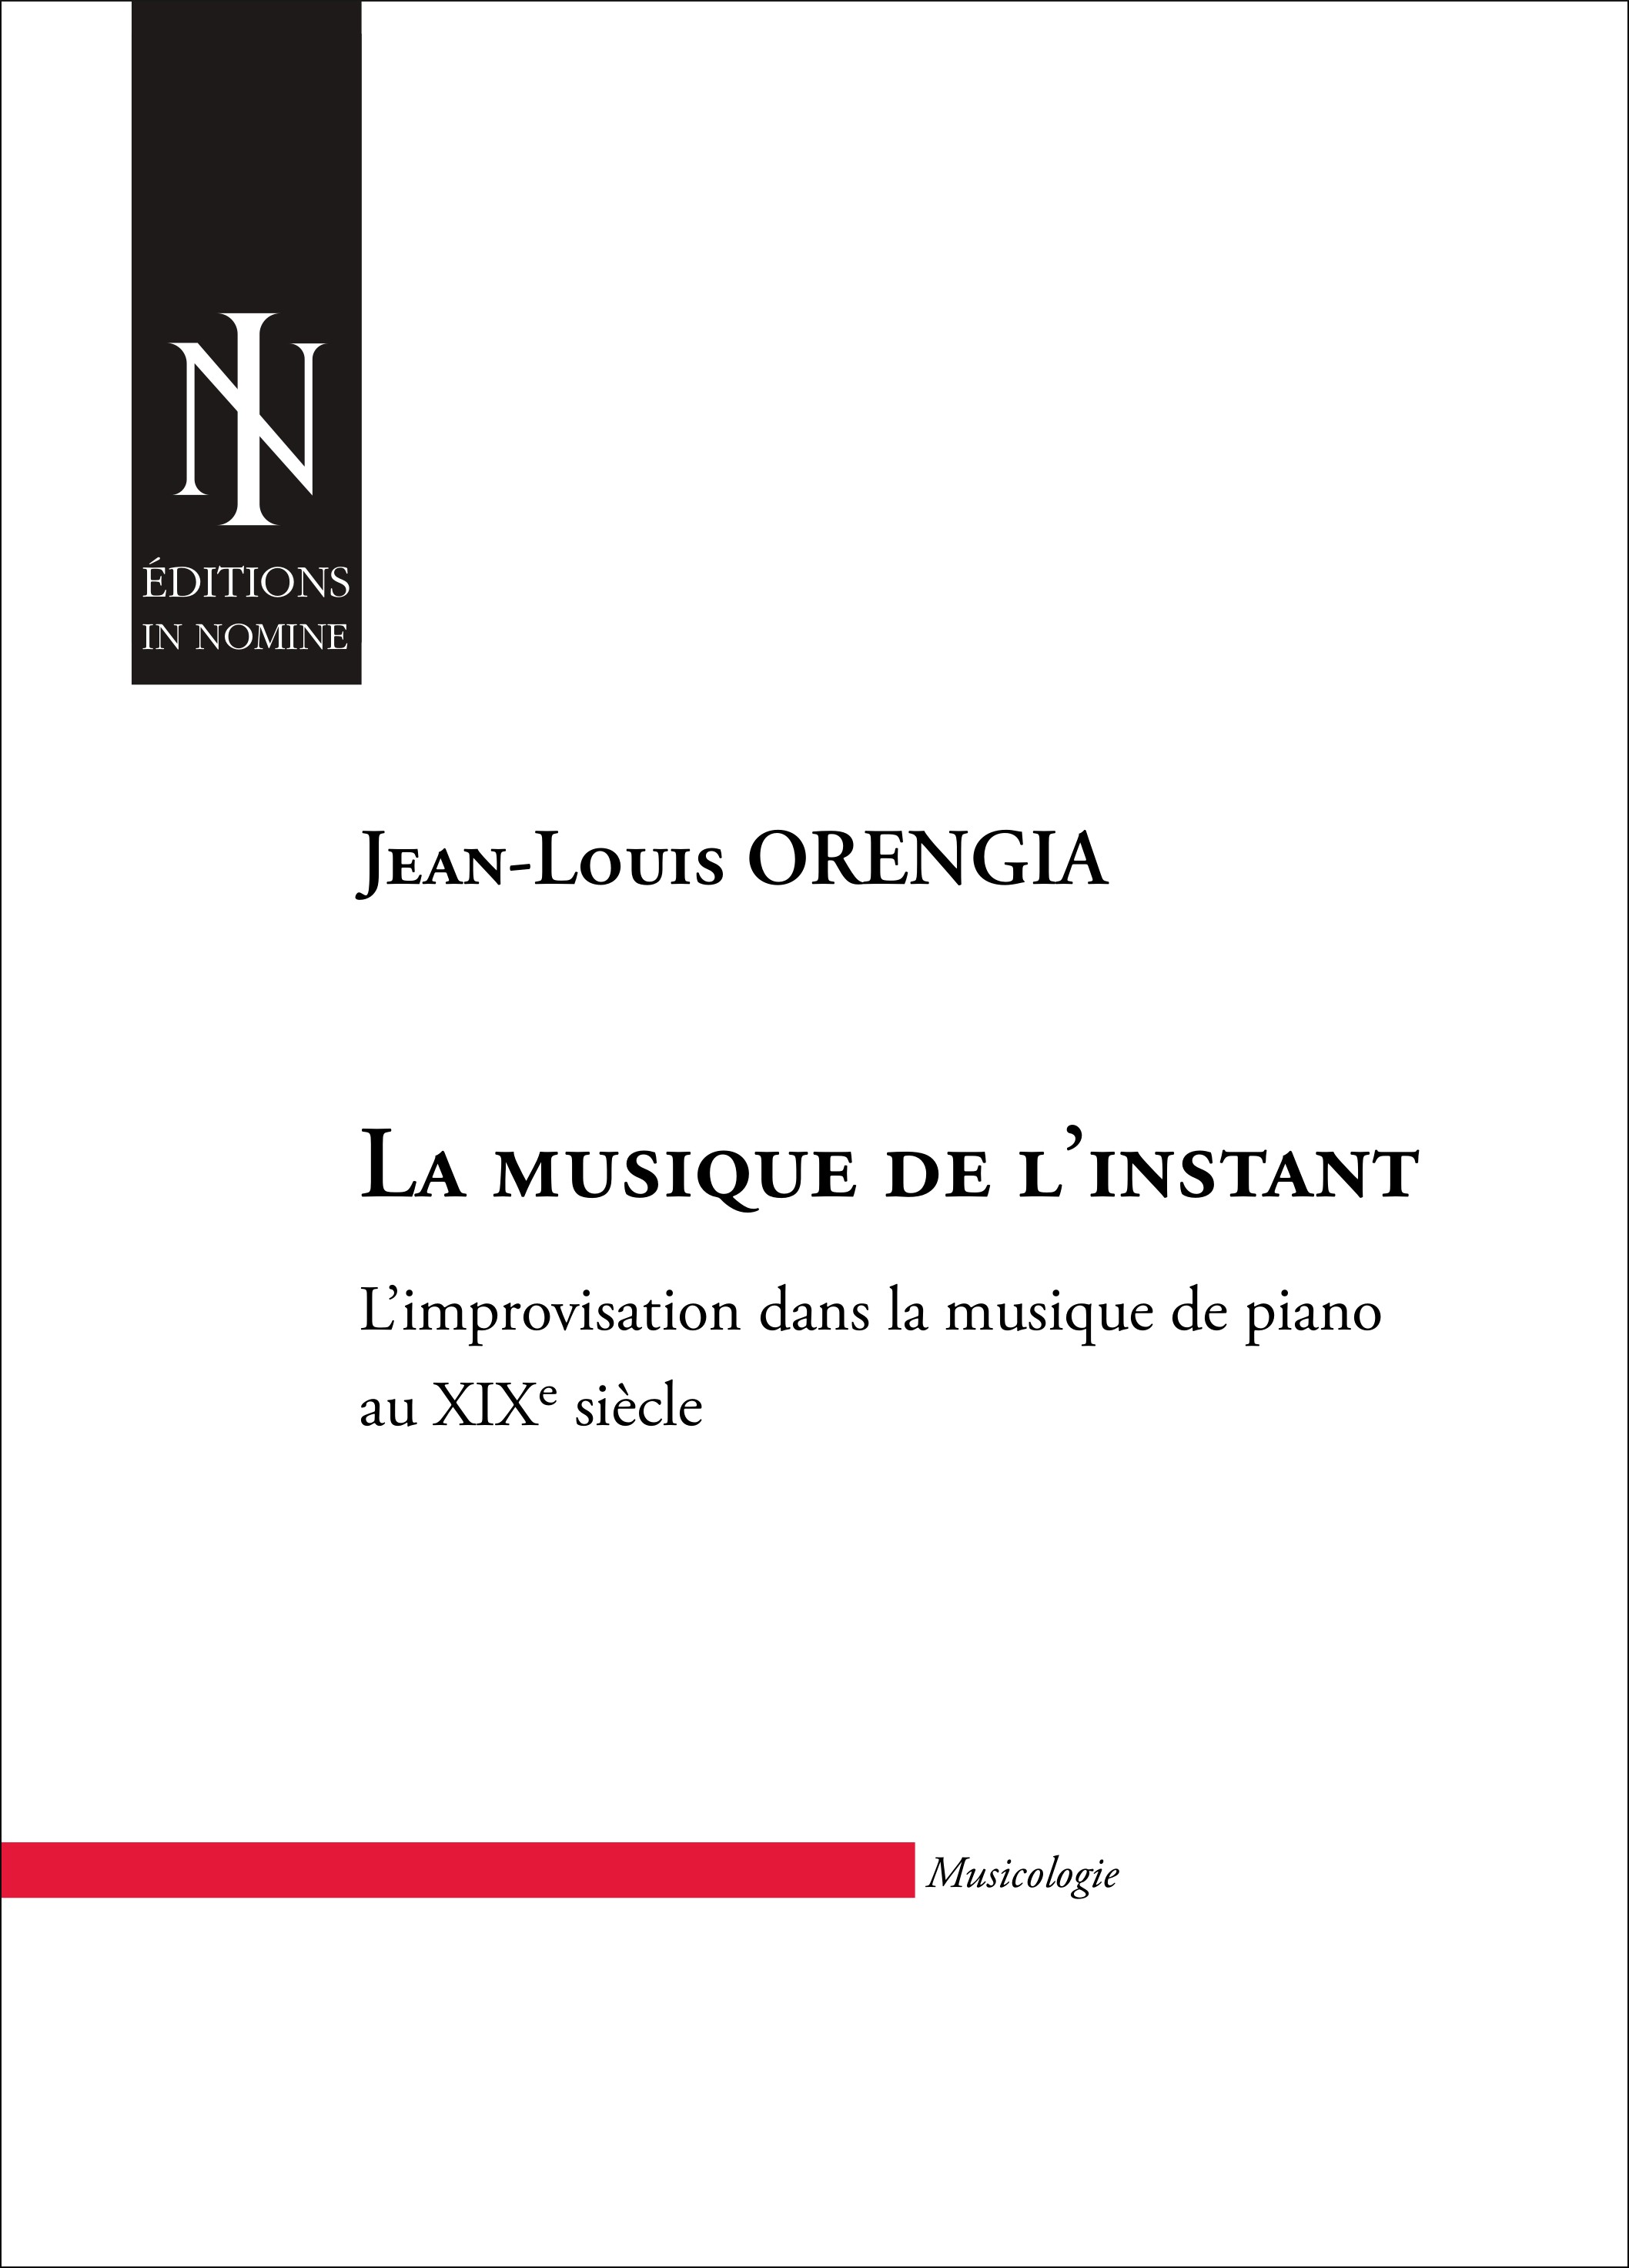 La Musique De L'Instant (ORENGIA JEAN-LOUIS)